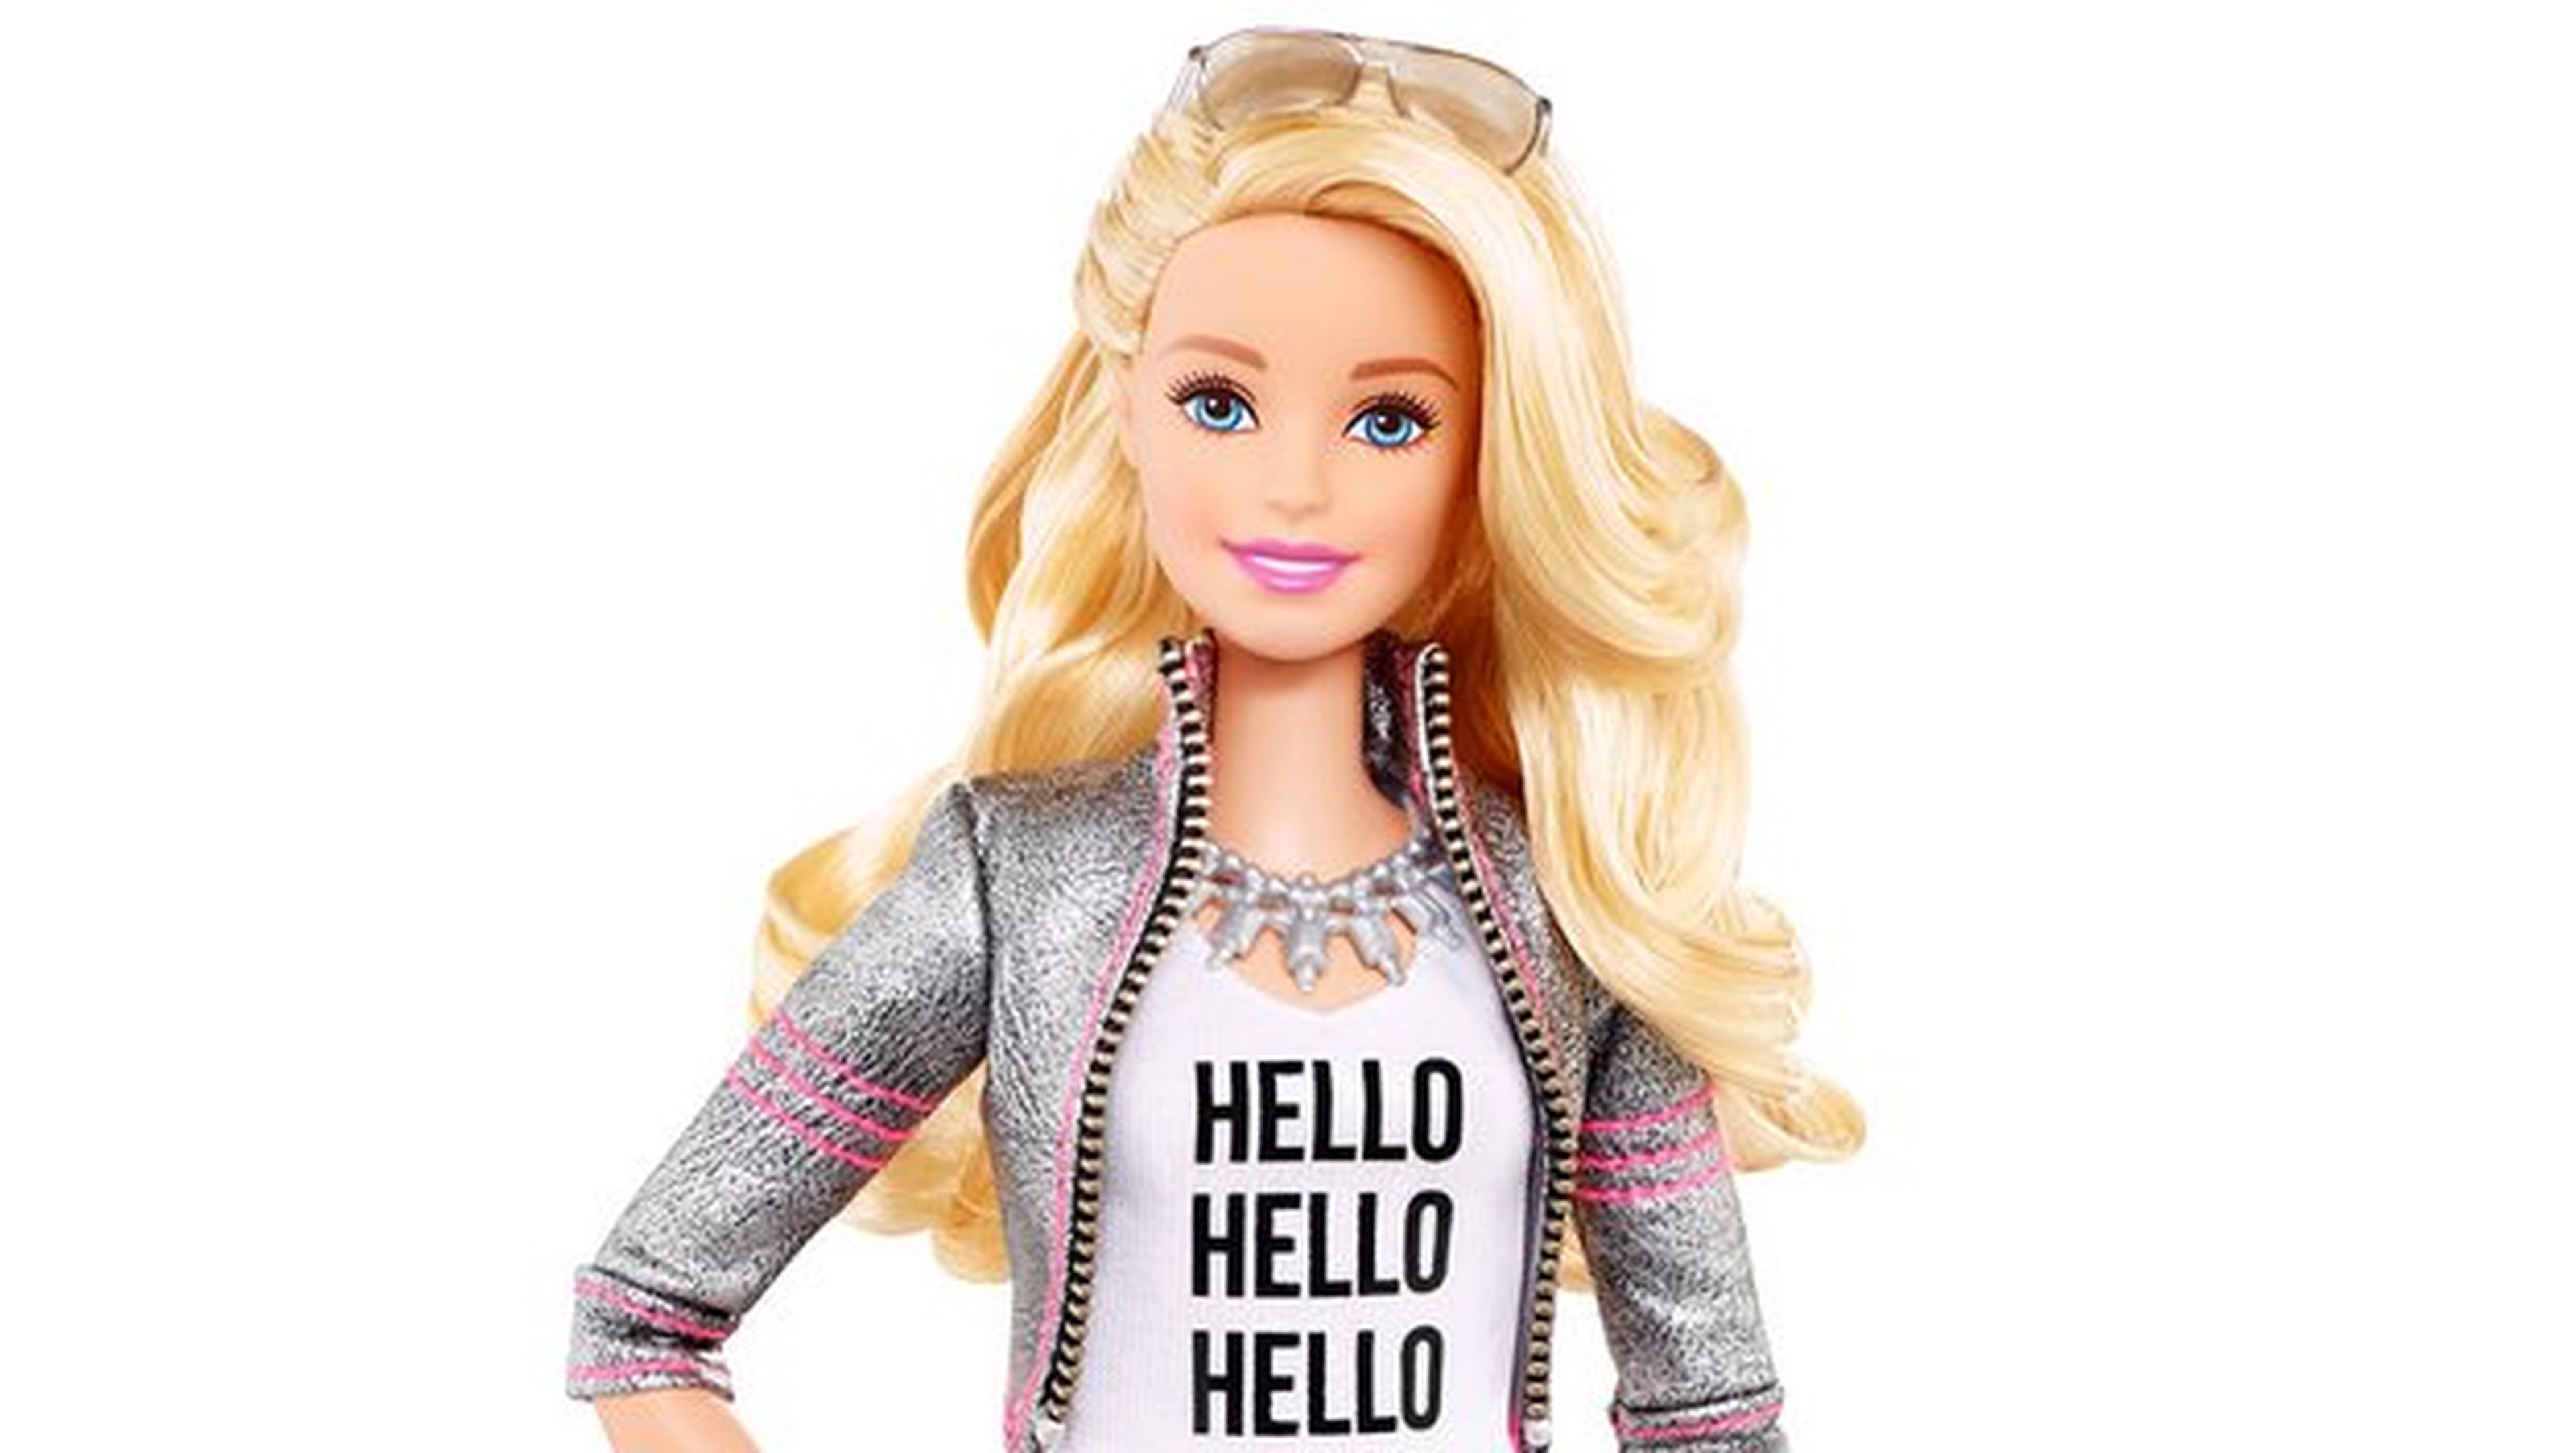 La nueva Barbie conectada a Internet charlará con los niños mediante reconocimiento de voz.